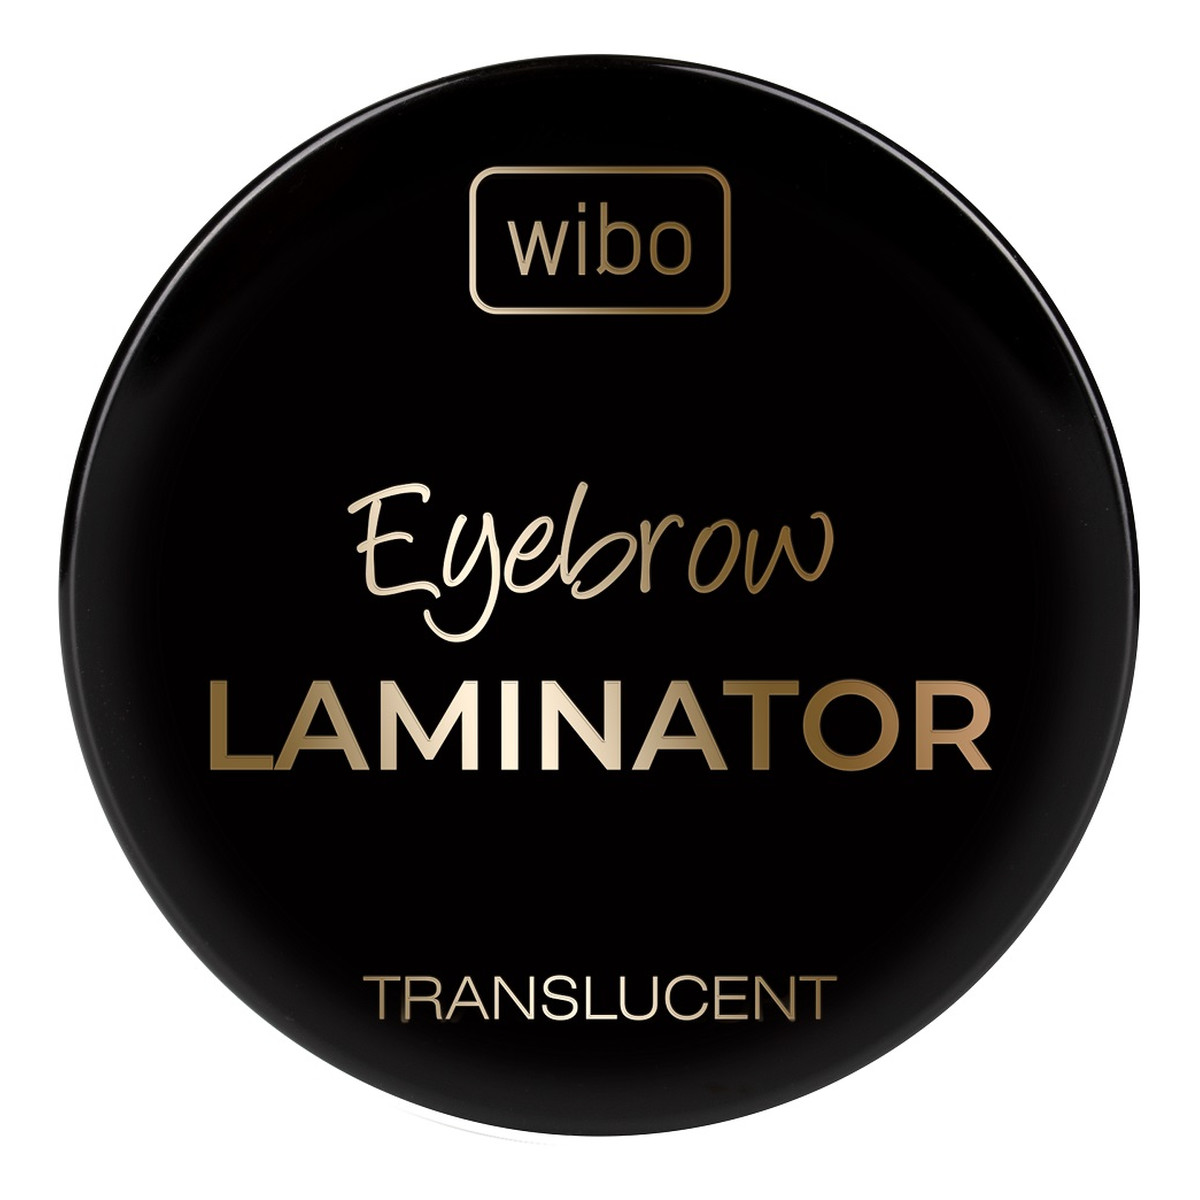 Wibo Translucent Eyebrow Laminator transparentne Mydło do stylizacji brwi 4,2 g 4.2g